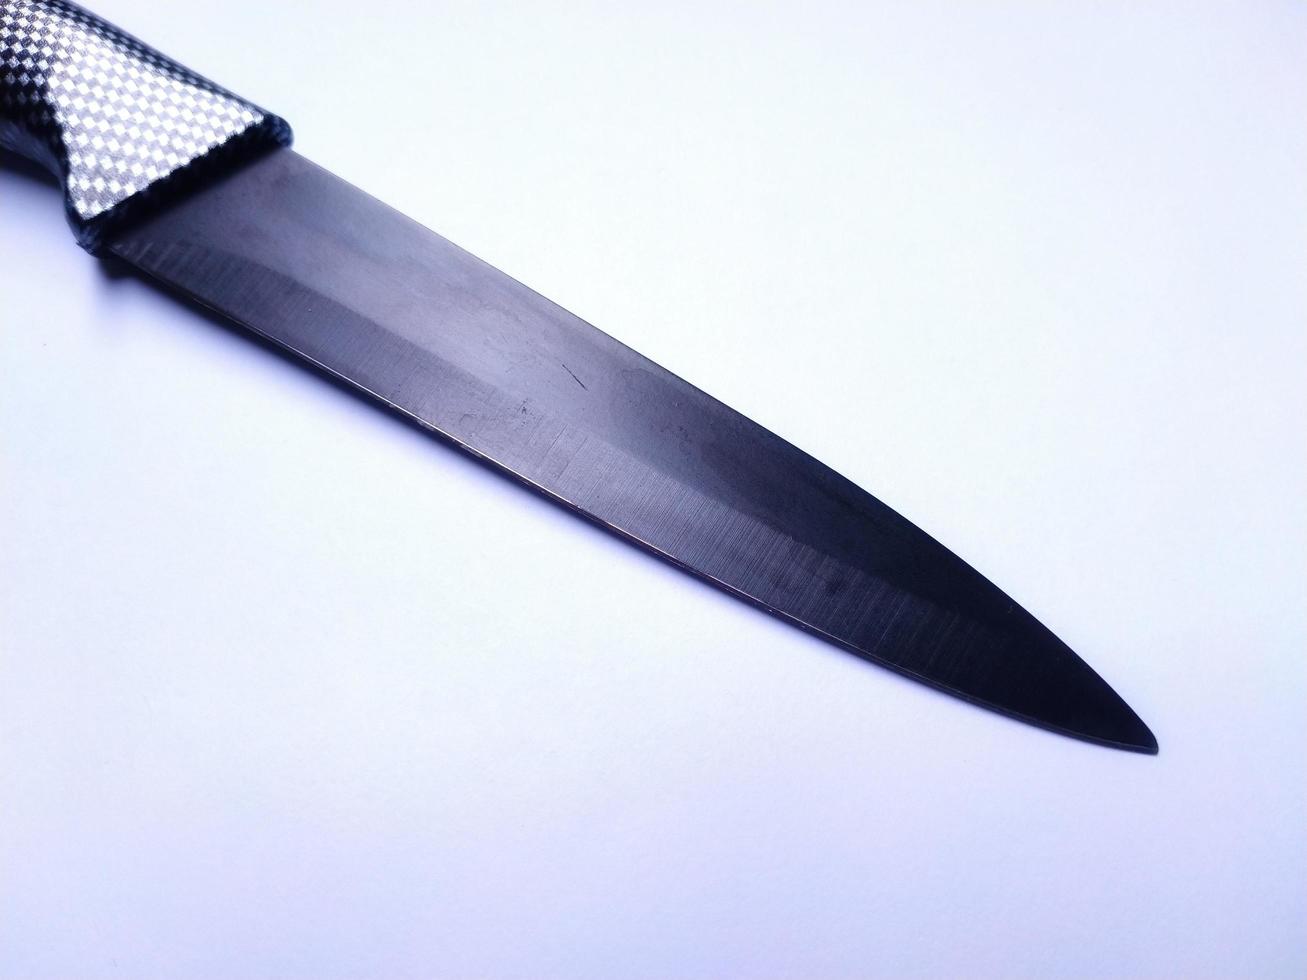 Küchenmesser aus Stahl, schwarzes Messer. isoliert auf weißem Hintergrund foto